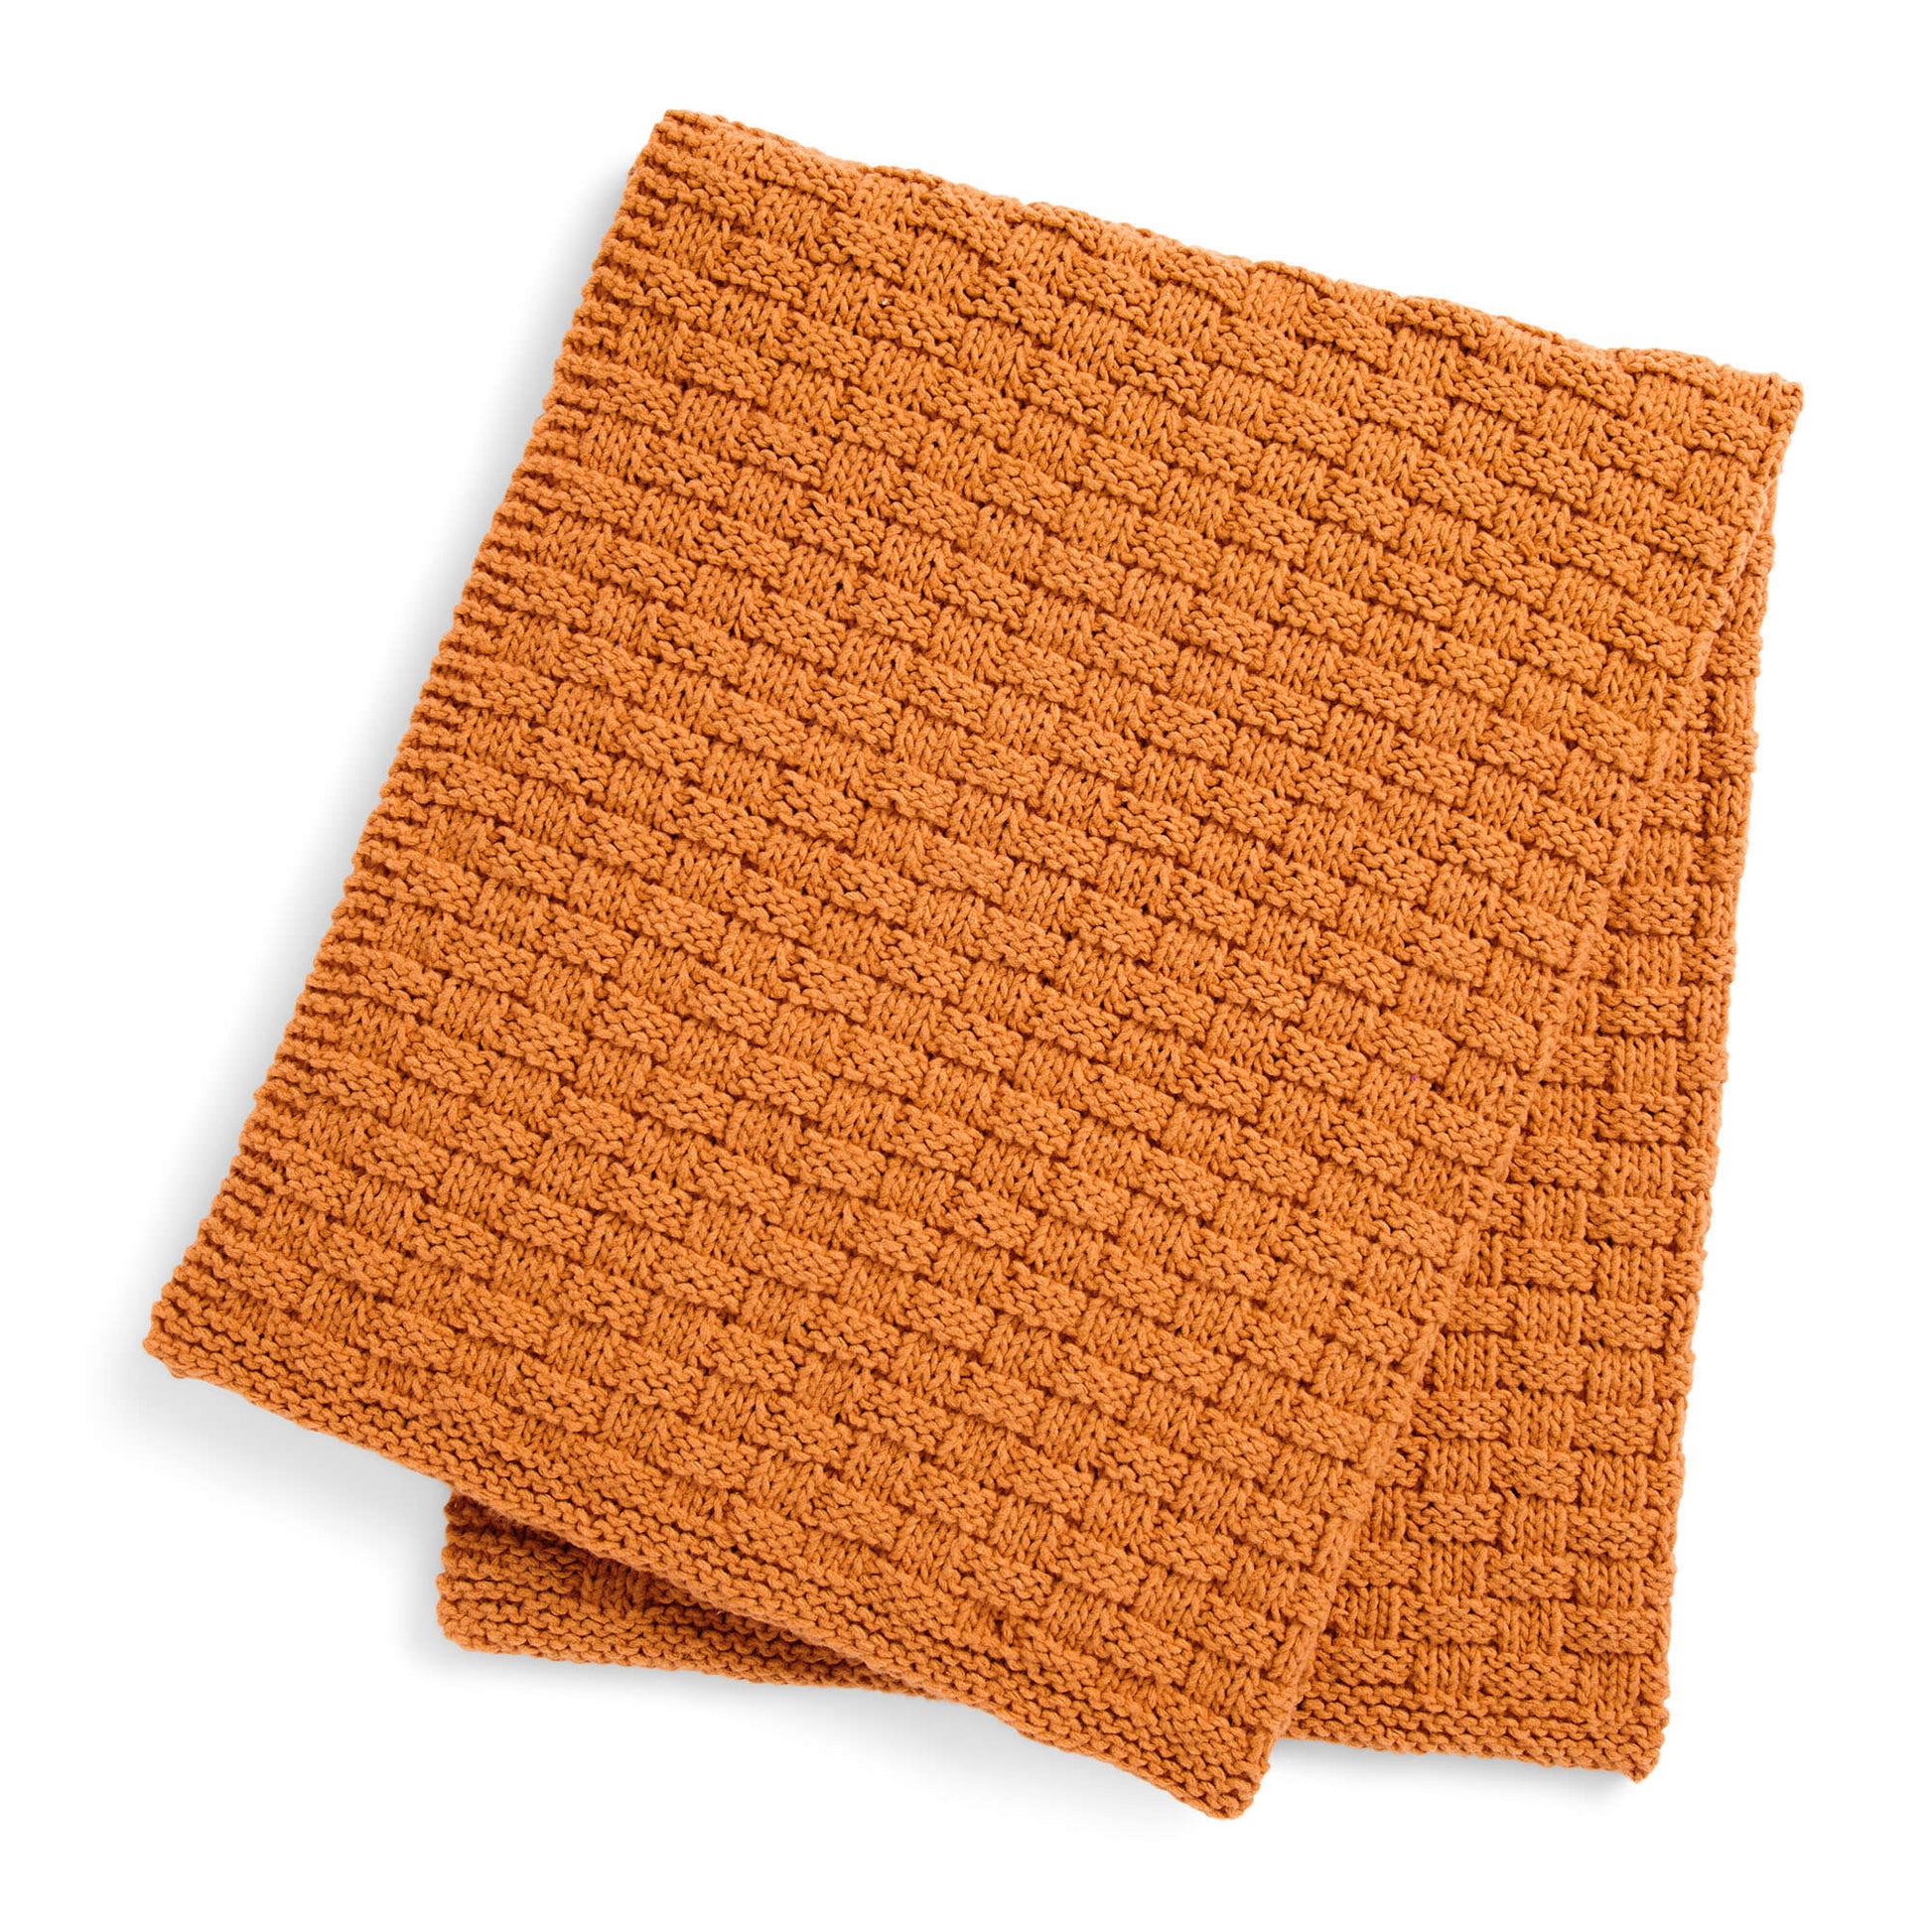 Free Bernat Basket Weave Knit Blanket Pattern